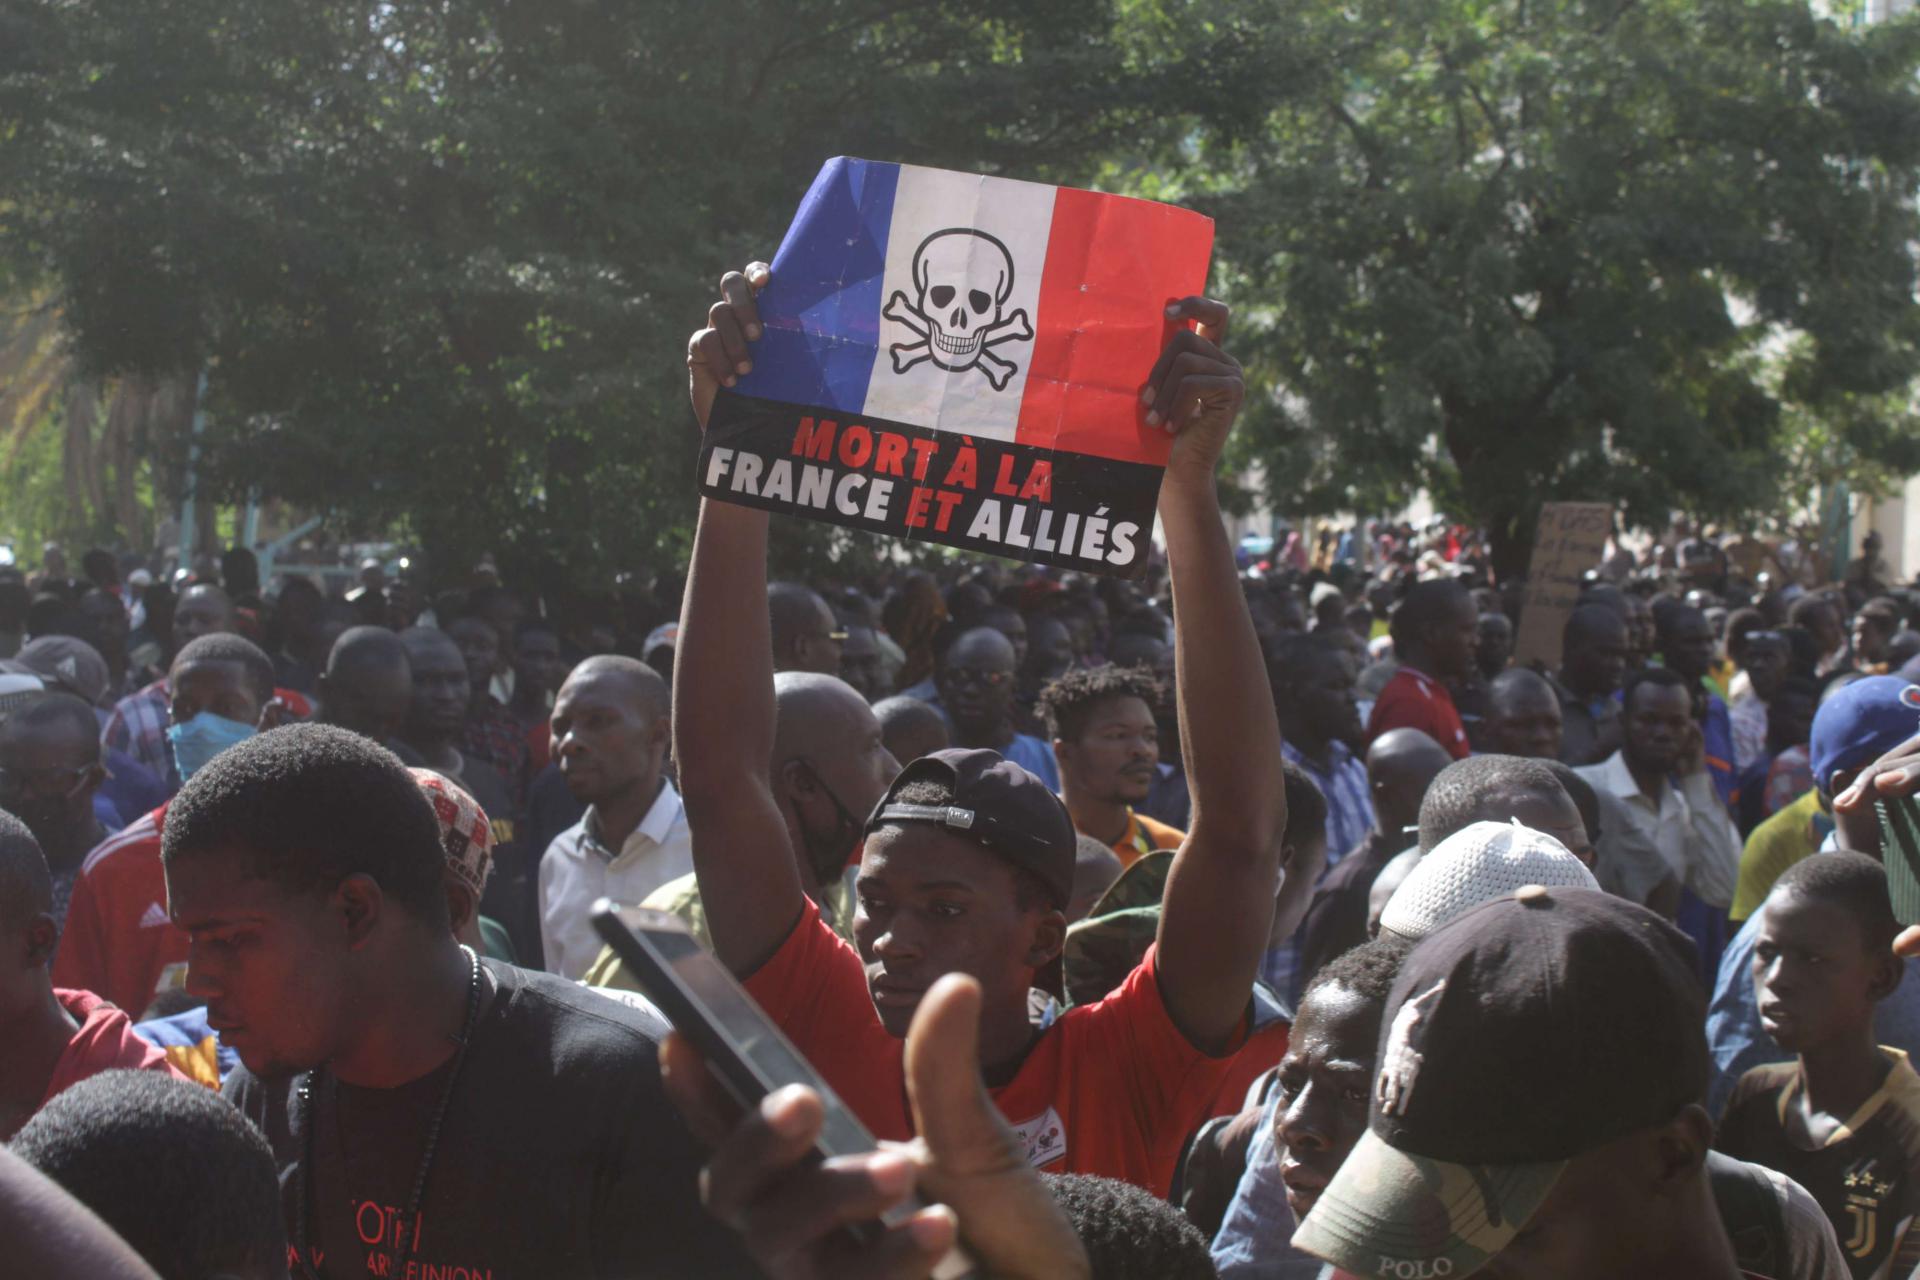 فرنسا لم تعد بقبول واسع في مالي بعد اخفاقات أمنية وعسكرية